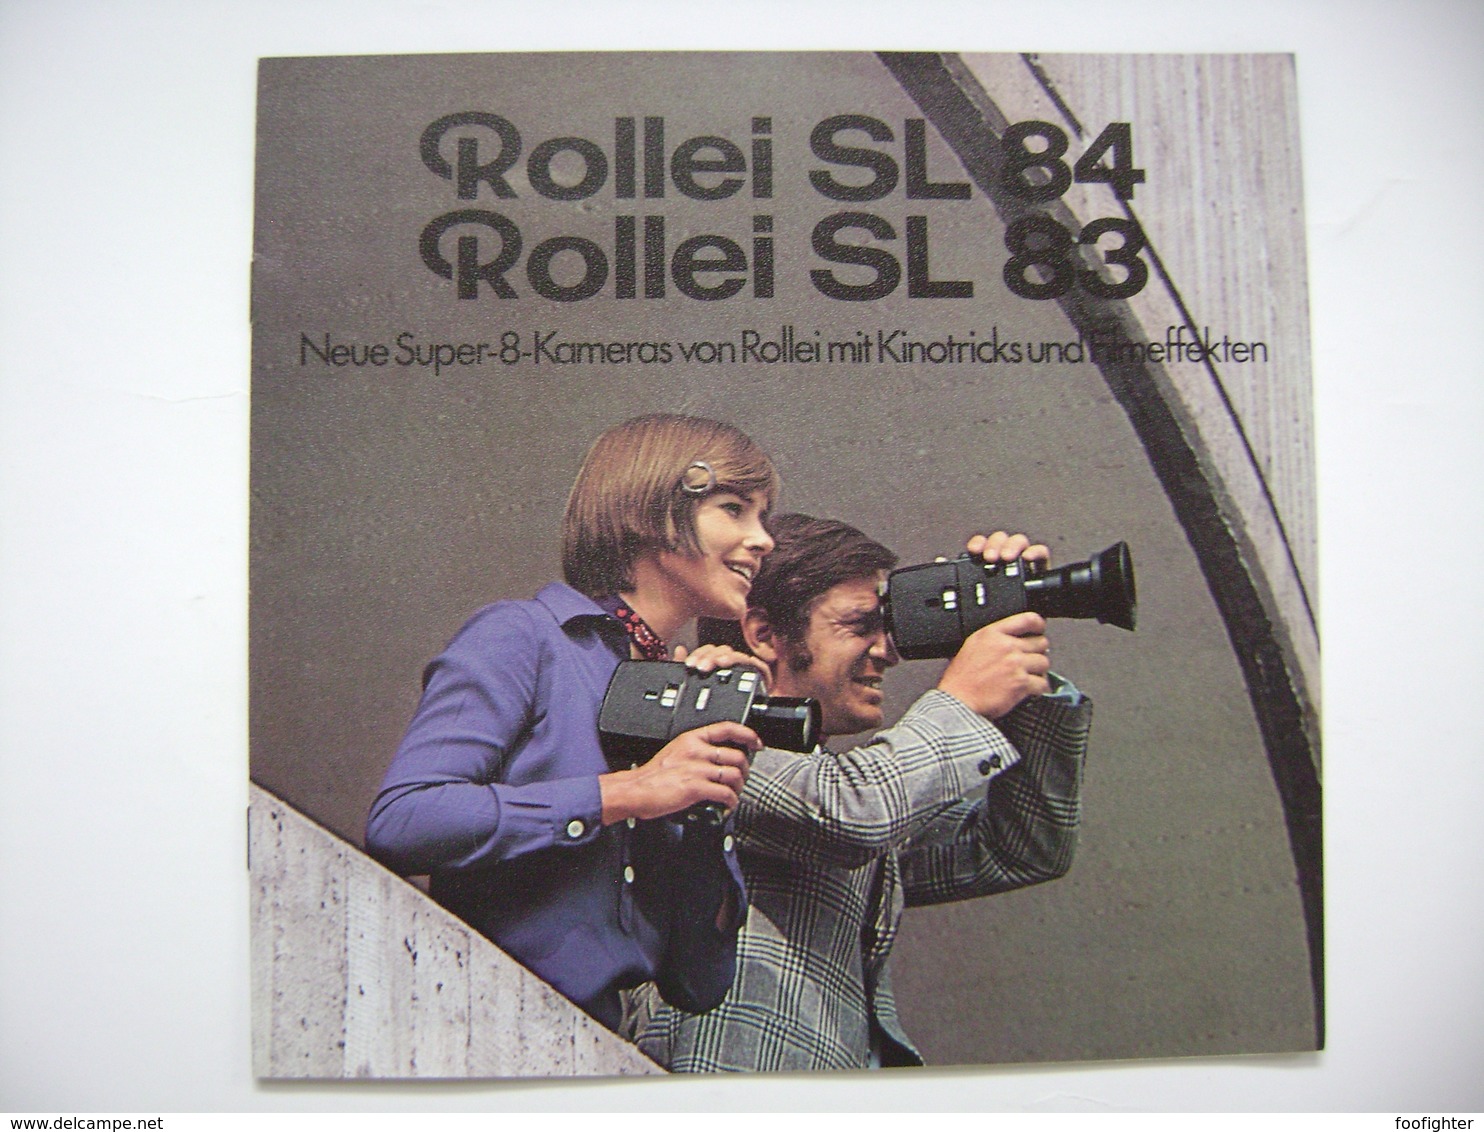 ROLLEI  Neue Super-8-Kameras SL 84 - SL 83, Technische Daten, Werbung 1970s - Appareils Photo